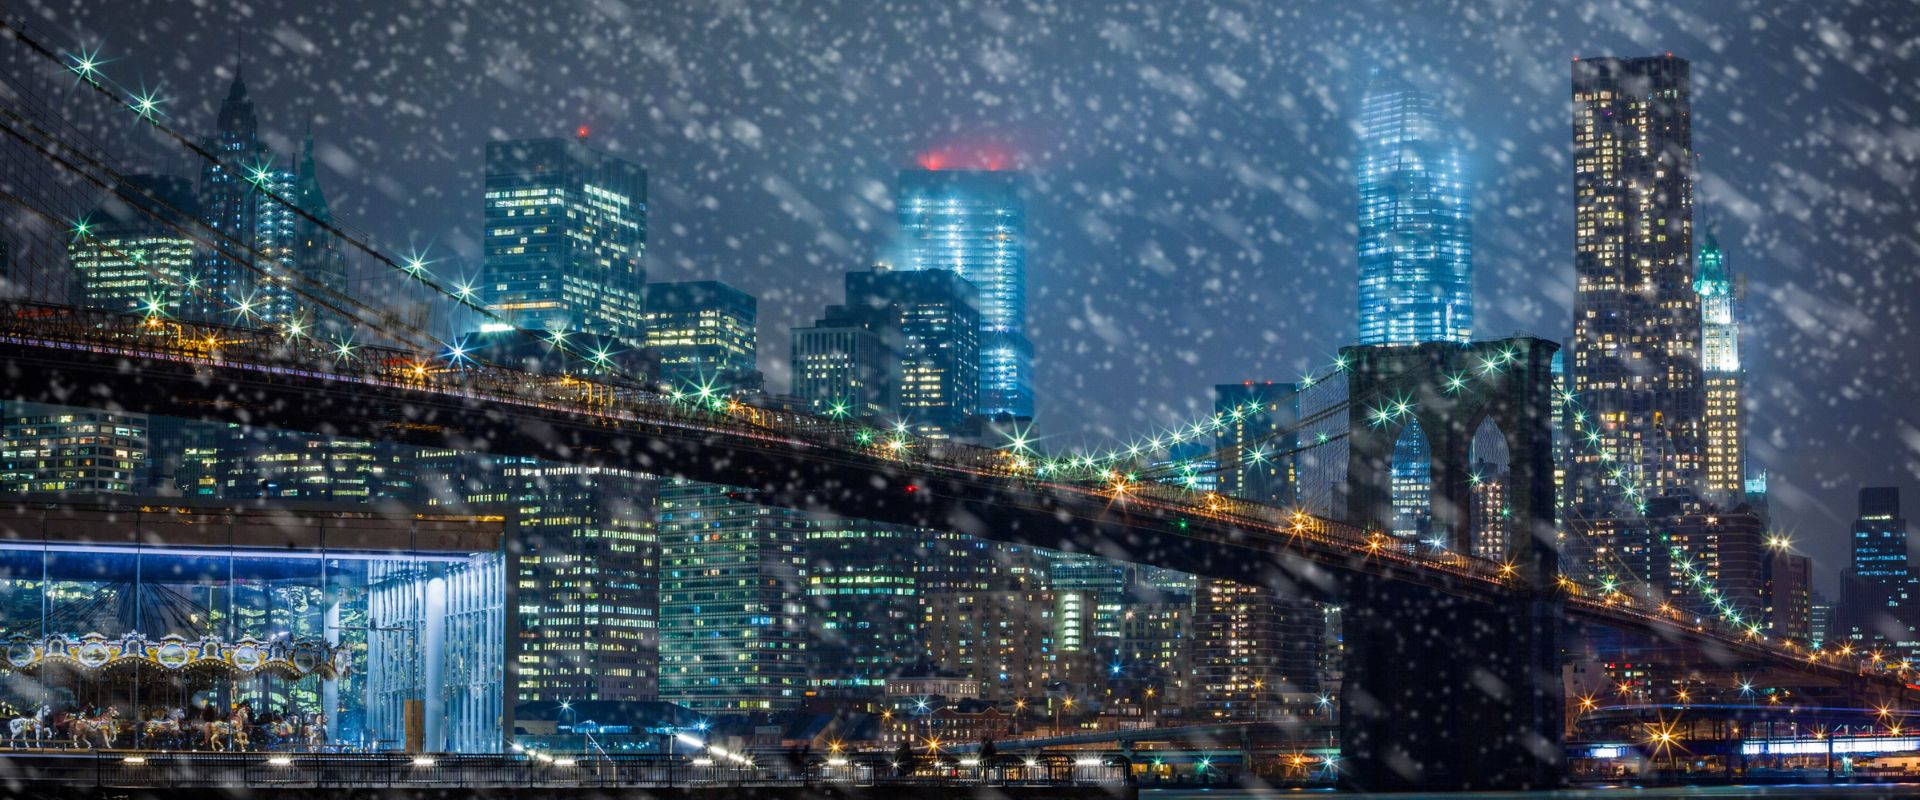 Cosa fare a New York a Natale: tutto quello che devi sapere per vivere la magia delle feste